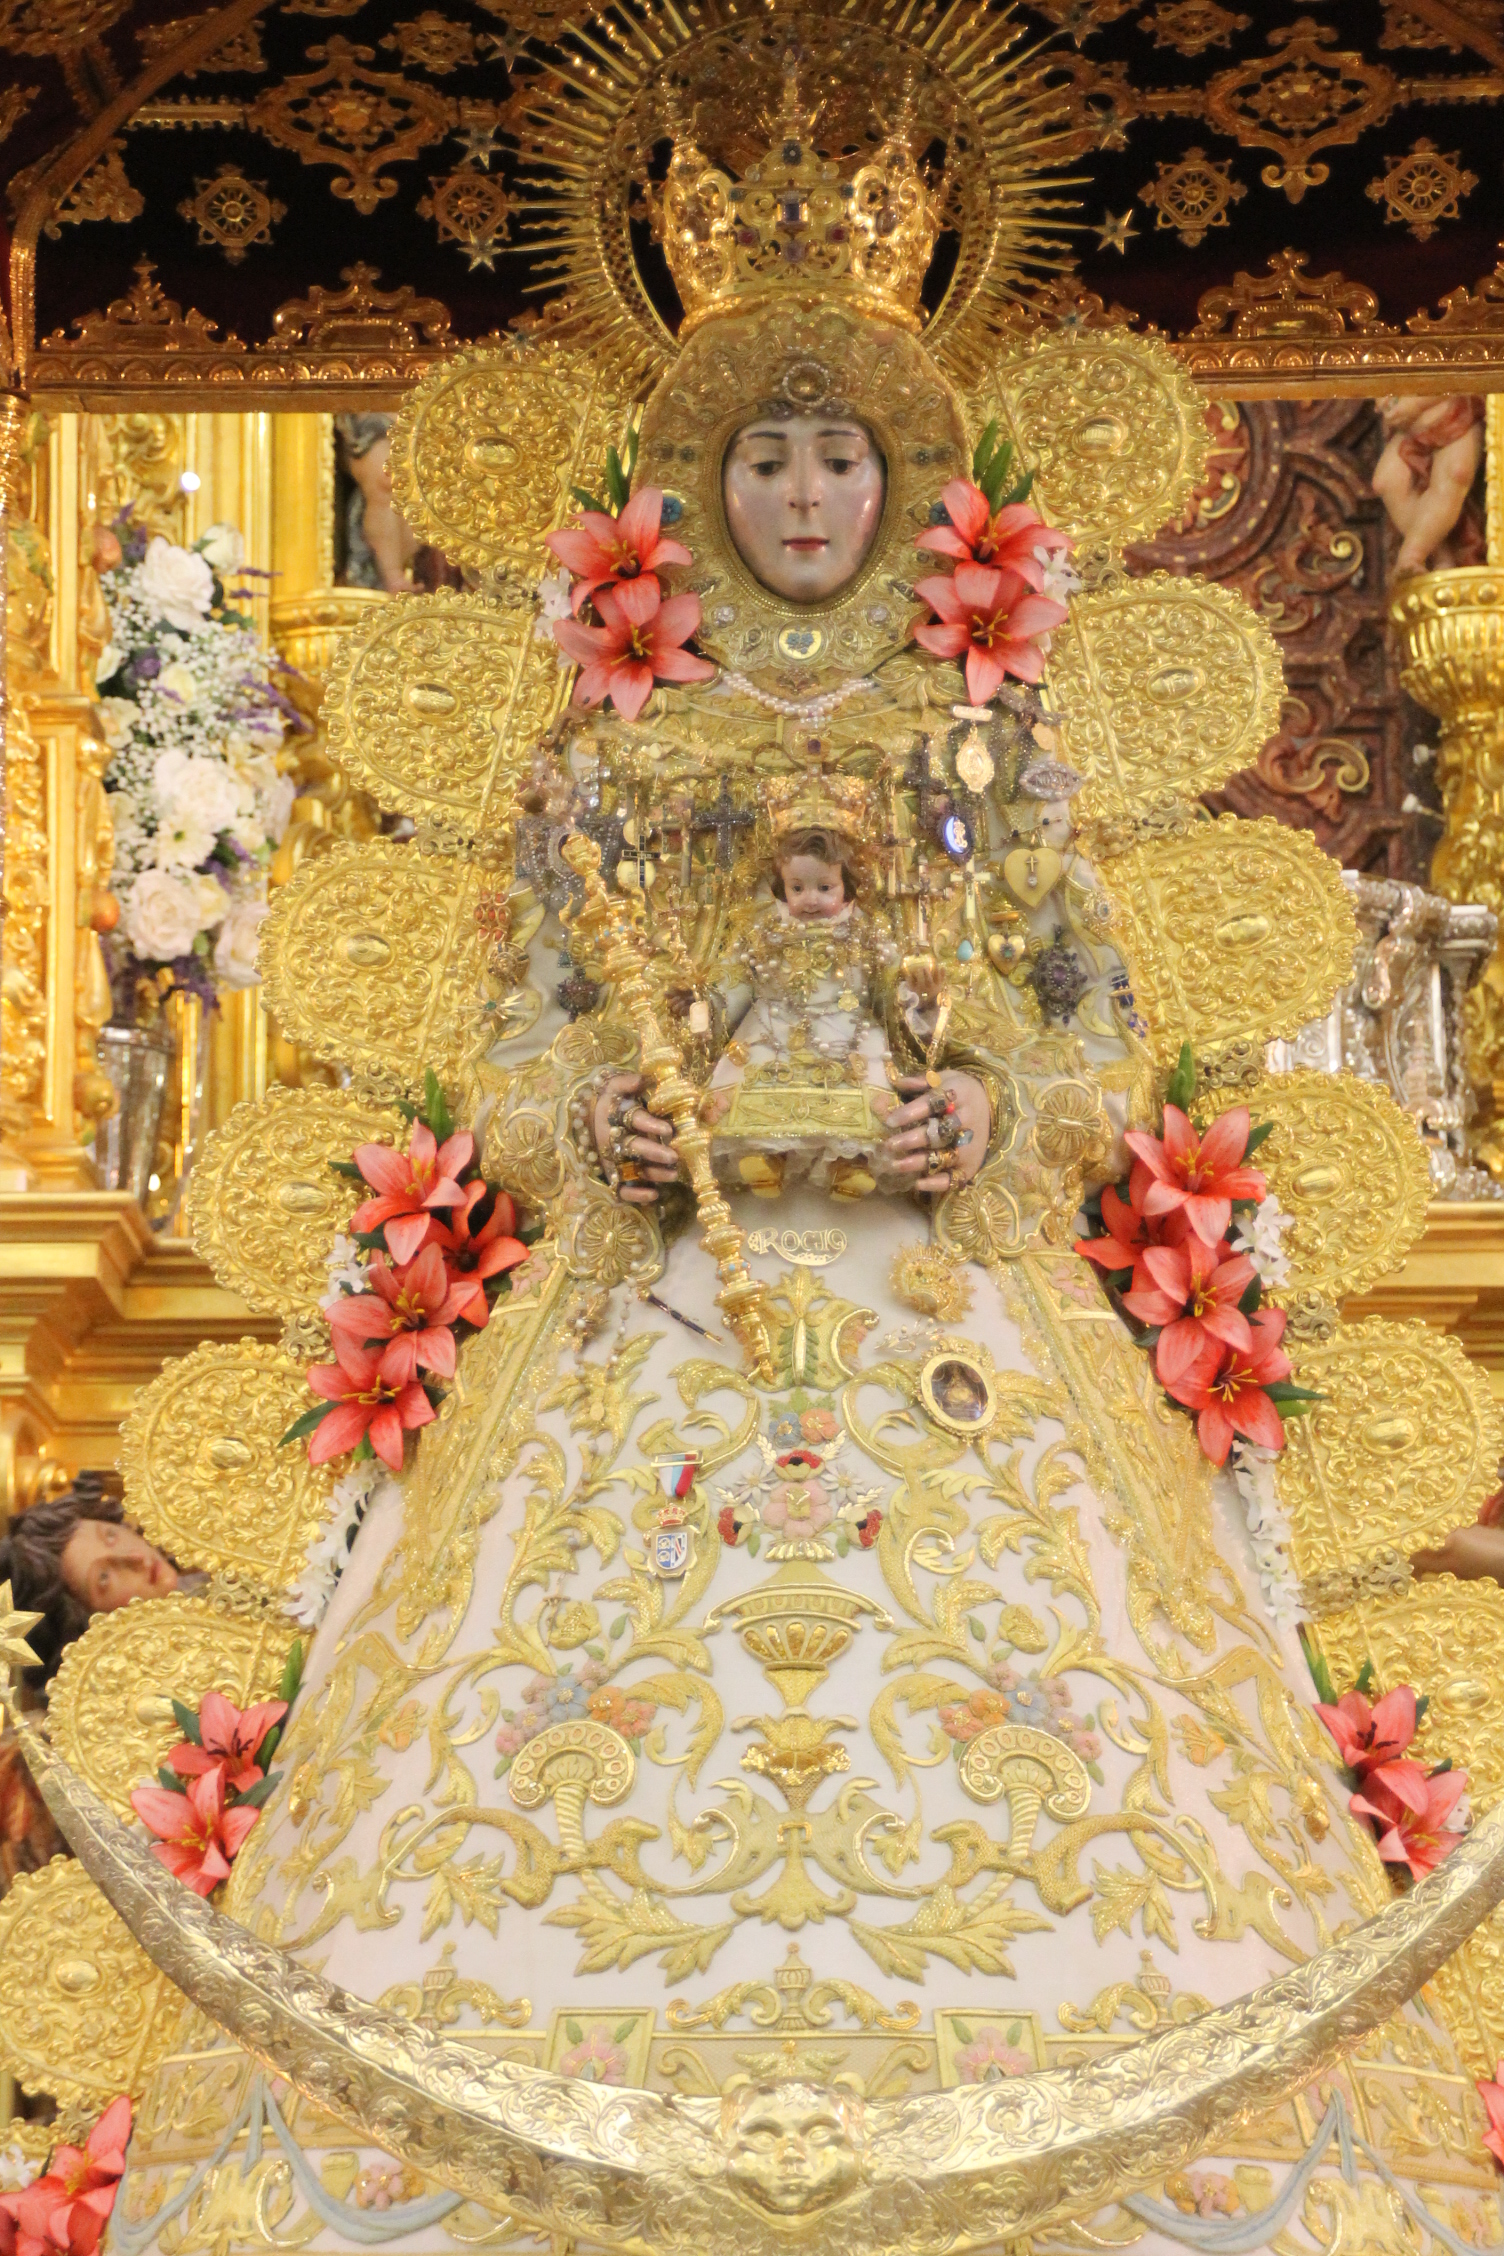 La Virgen del Rocío luce nuevo traje para la Romería 2015